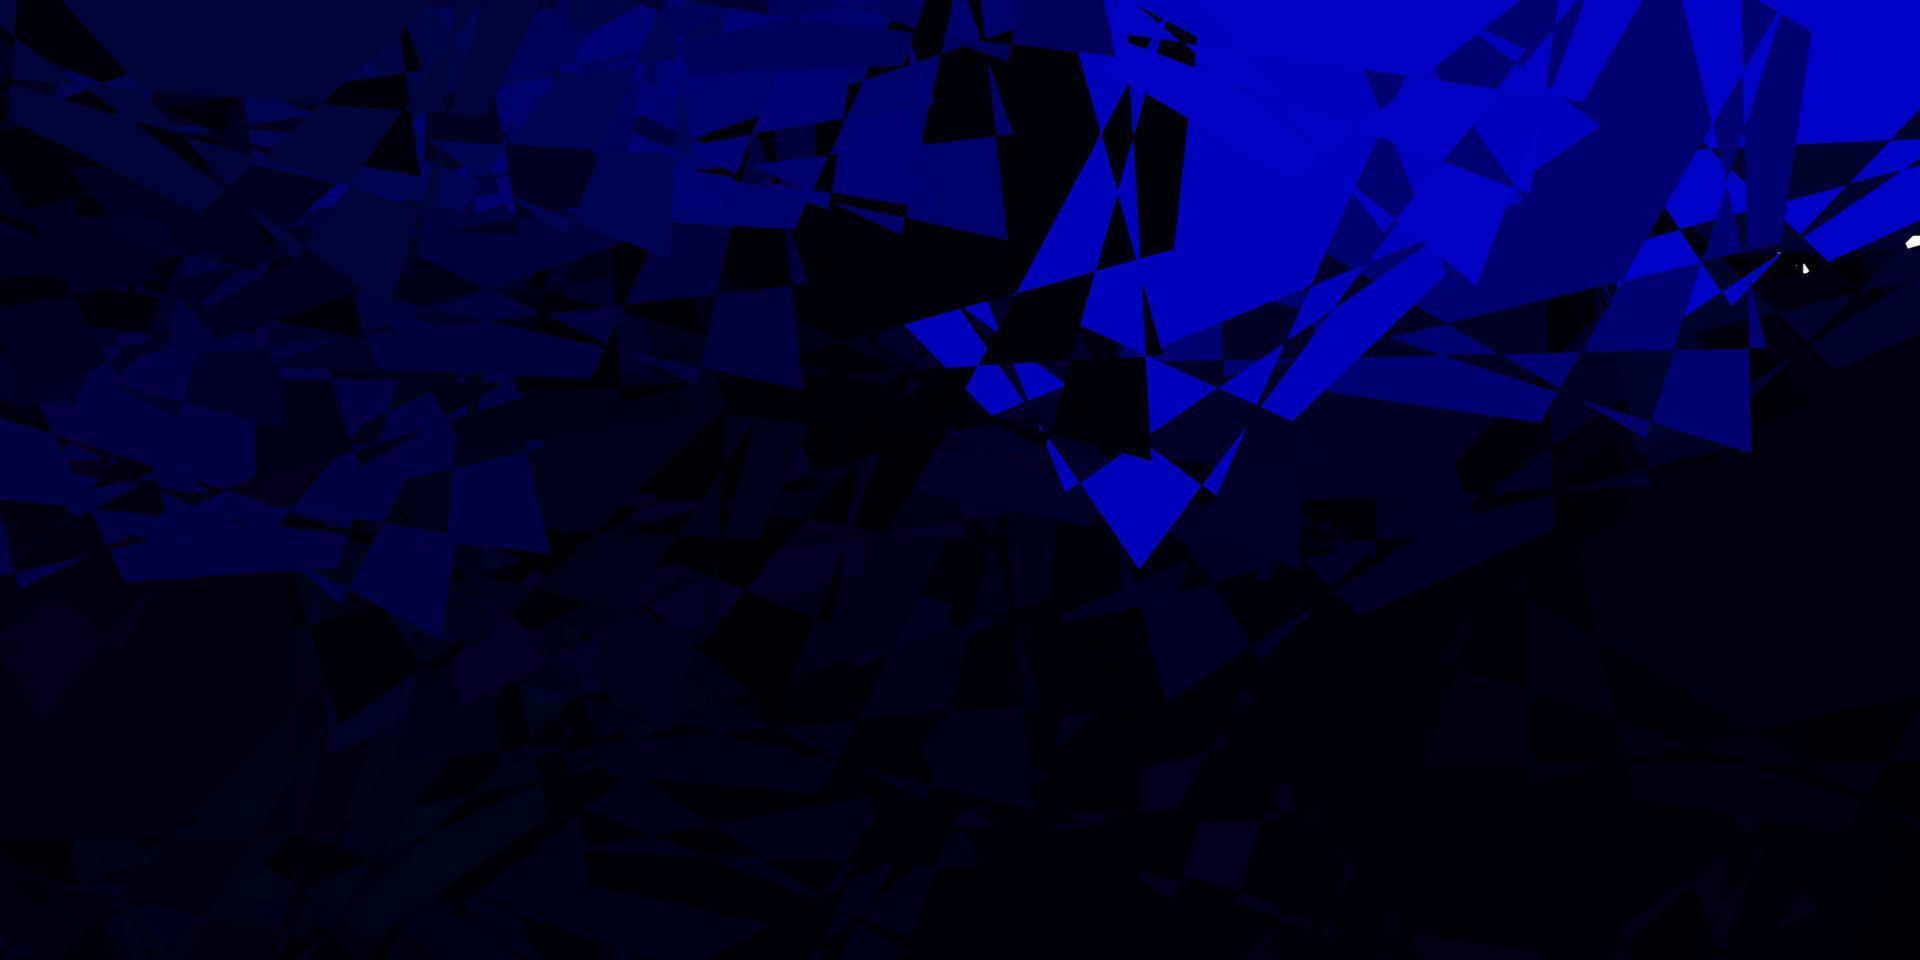 sfondo vettoriale blu scuro con triangoli.